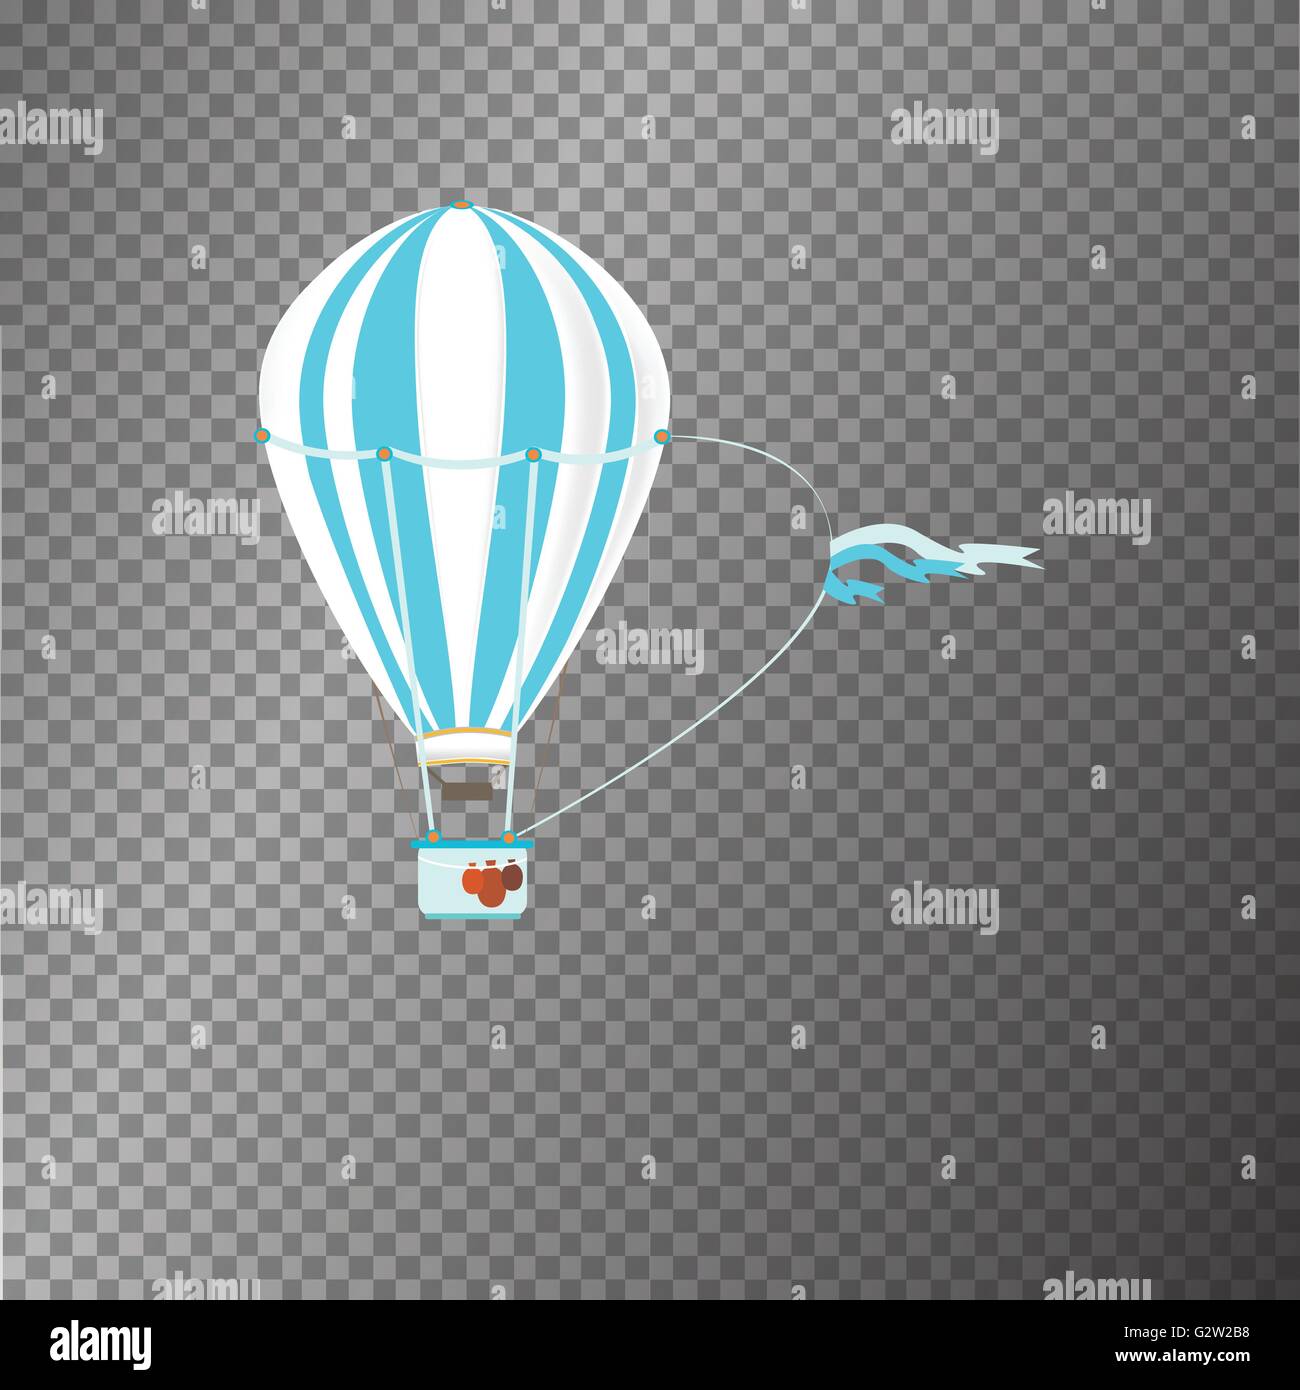 vector icon air ballon Stock Vector